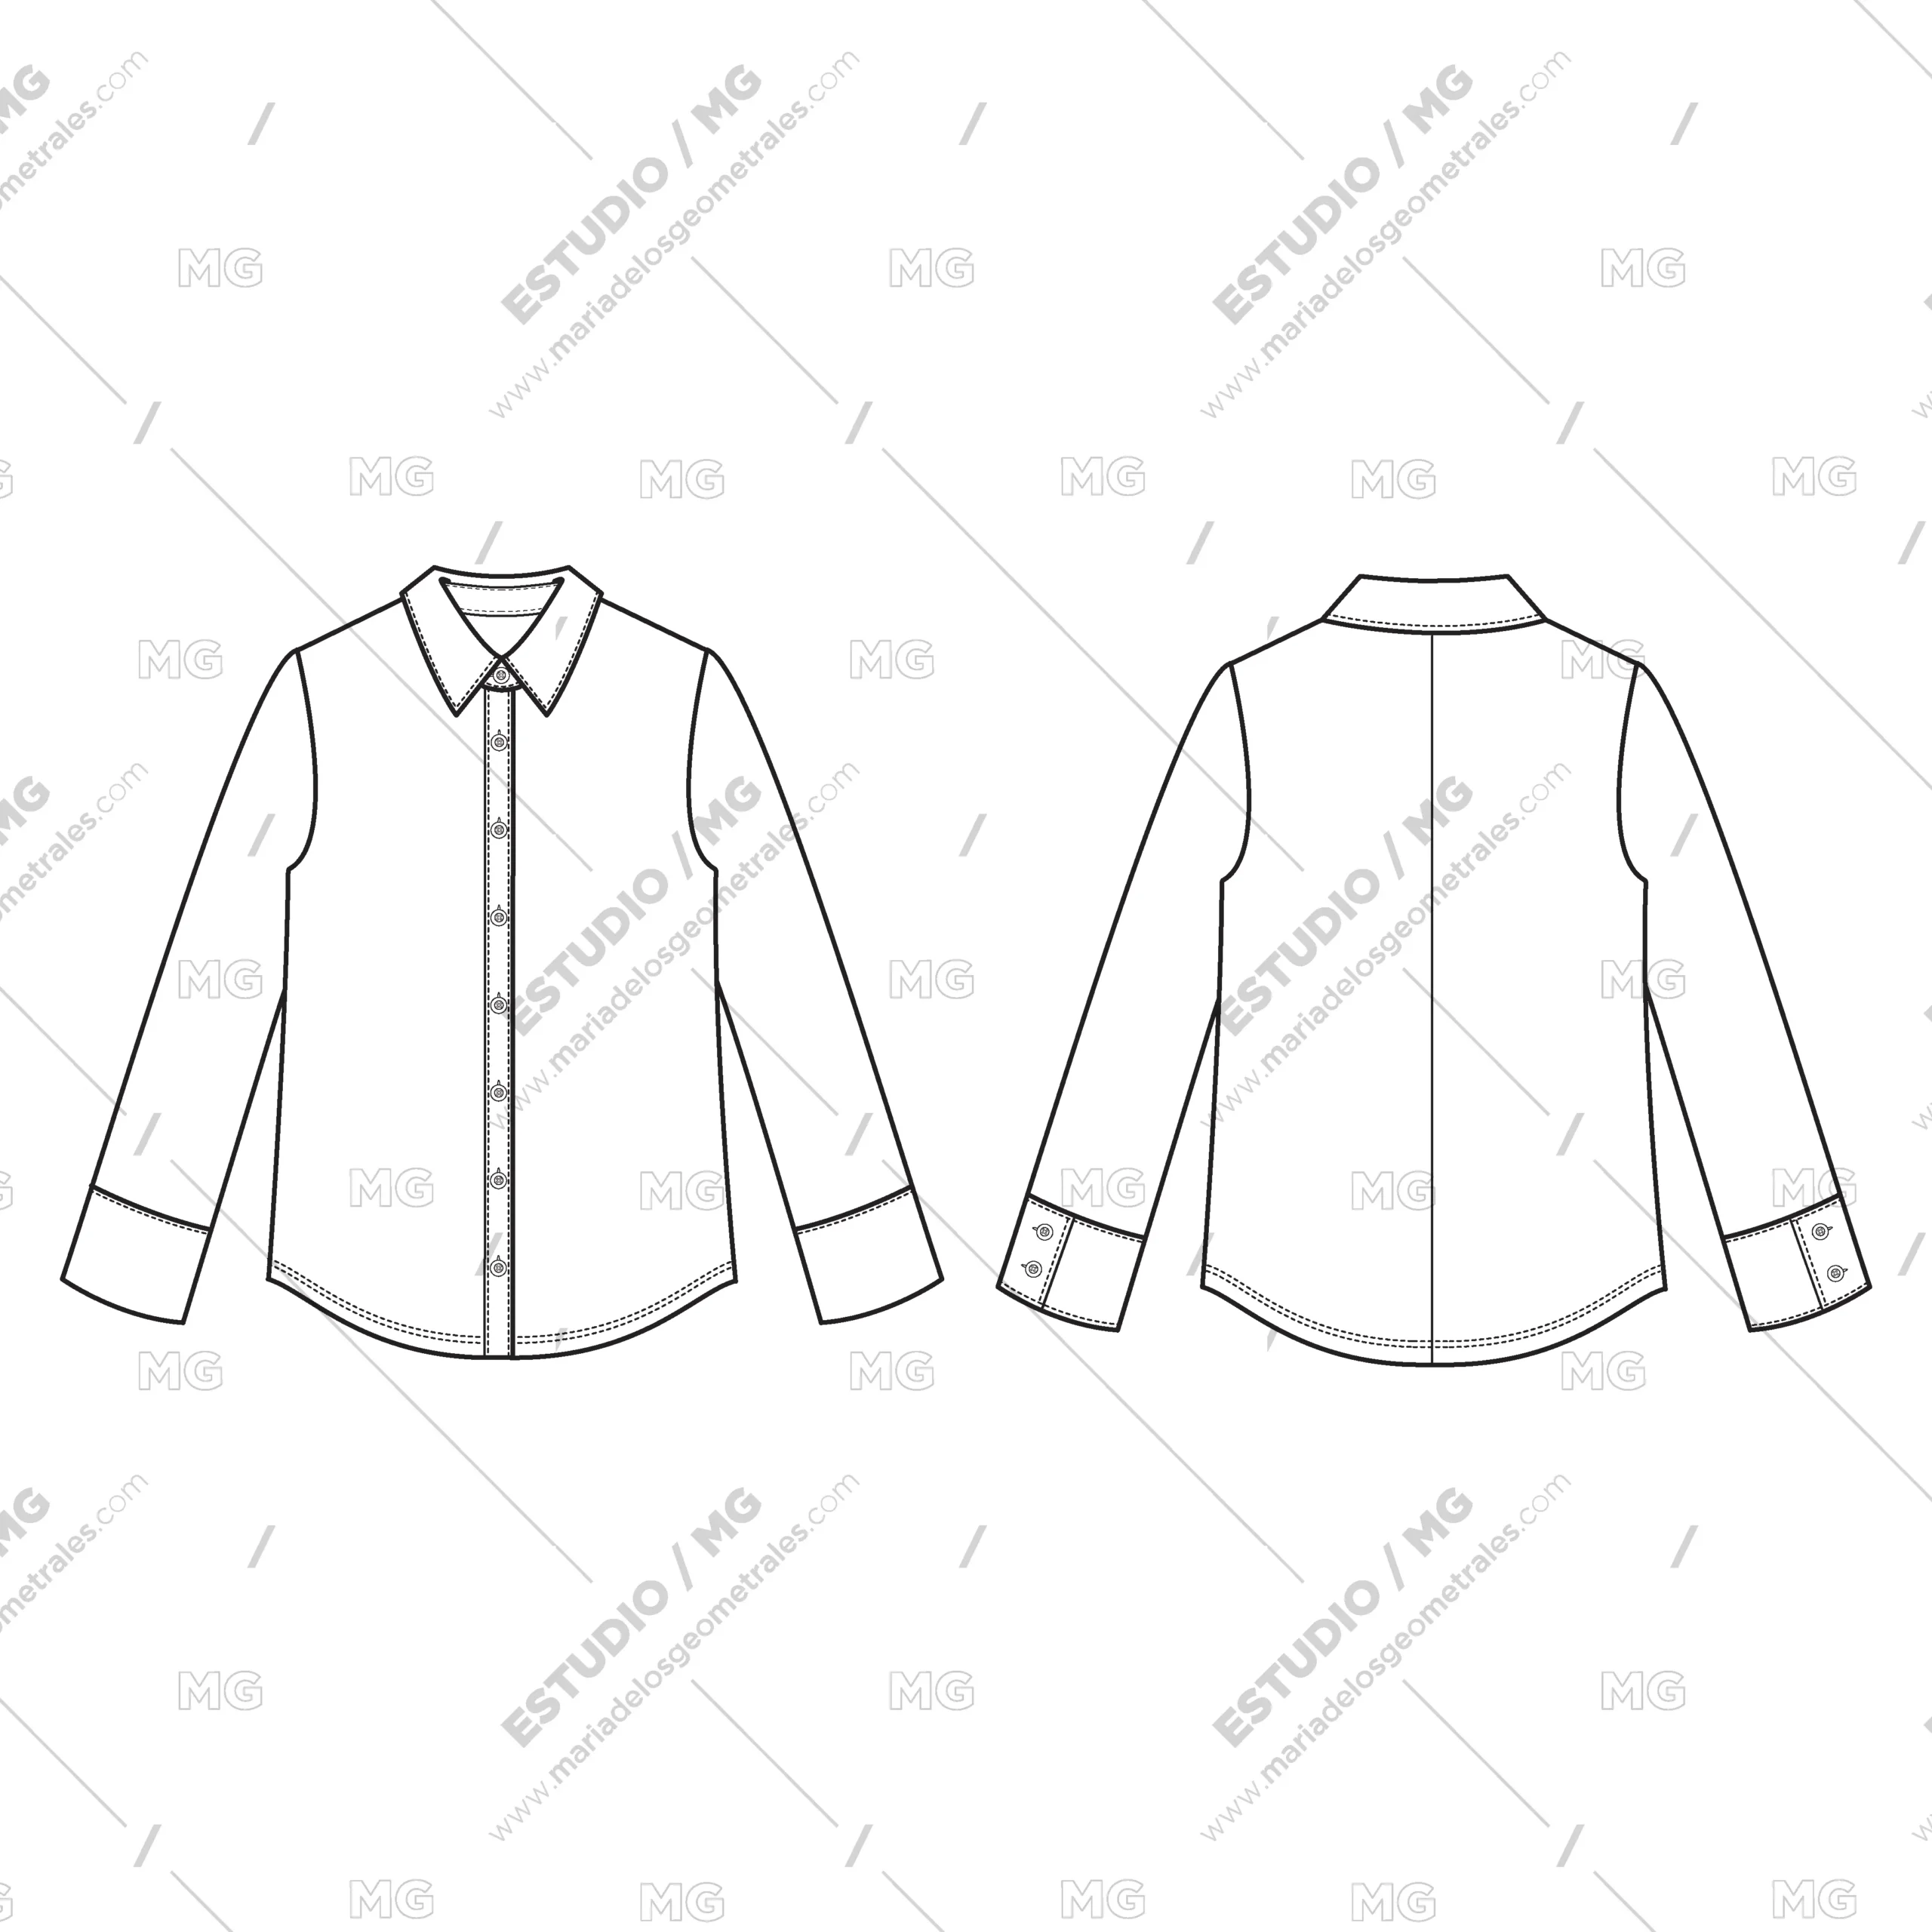 geometral camisa - Qué es el Geometral en una prenda